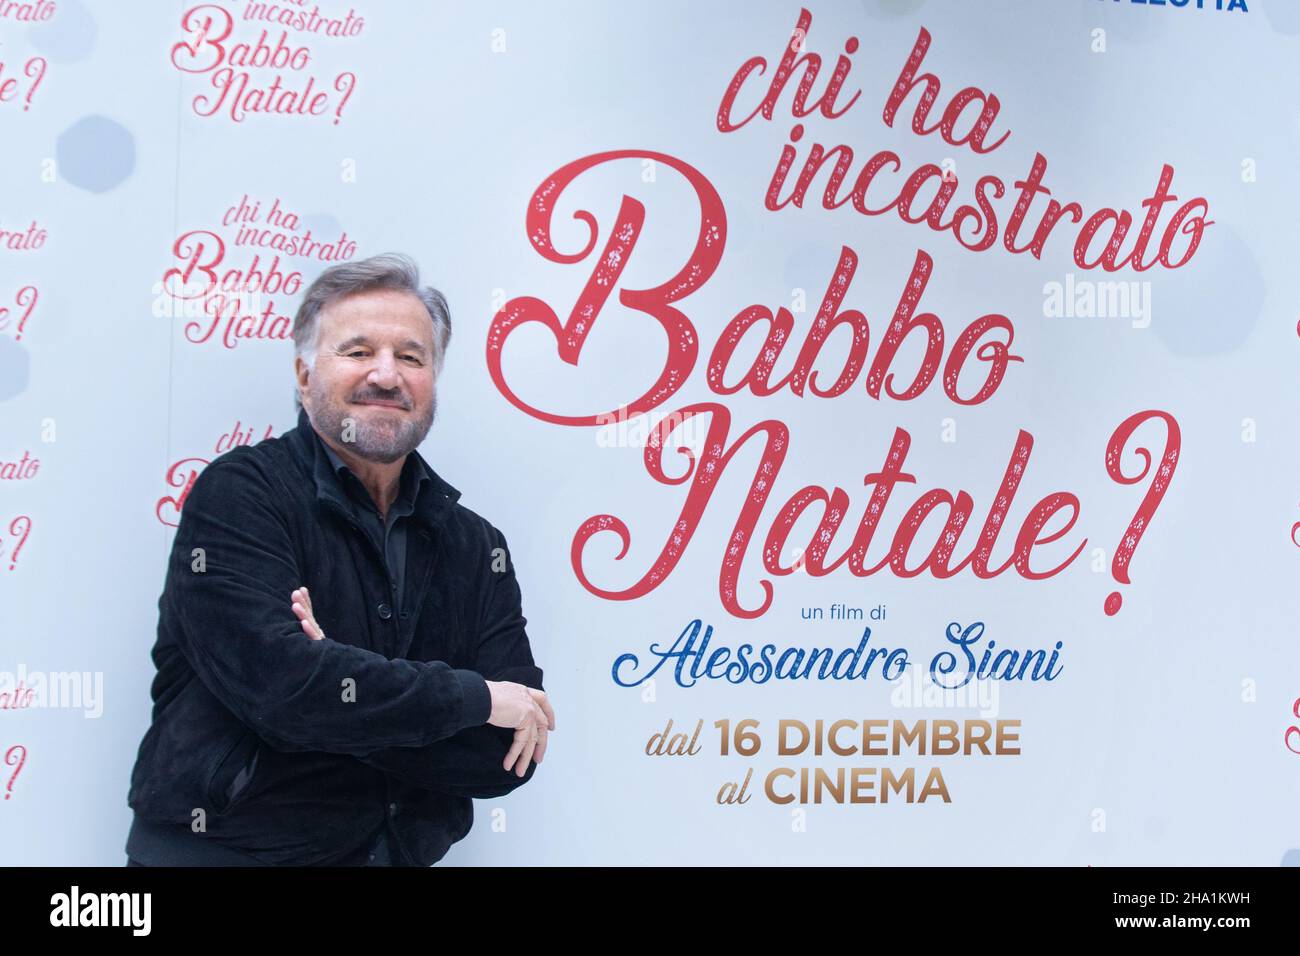 December 9, 2021, Rome, Italy: Christian De Sica attends the photocall of the film ''Chi ha incastrato Babbo Natale?'' in Rome, on December 9, 2021  (Credit Image: © Matteo Nardone/Pacific Press via ZUMA Press Wire) Stock Photo